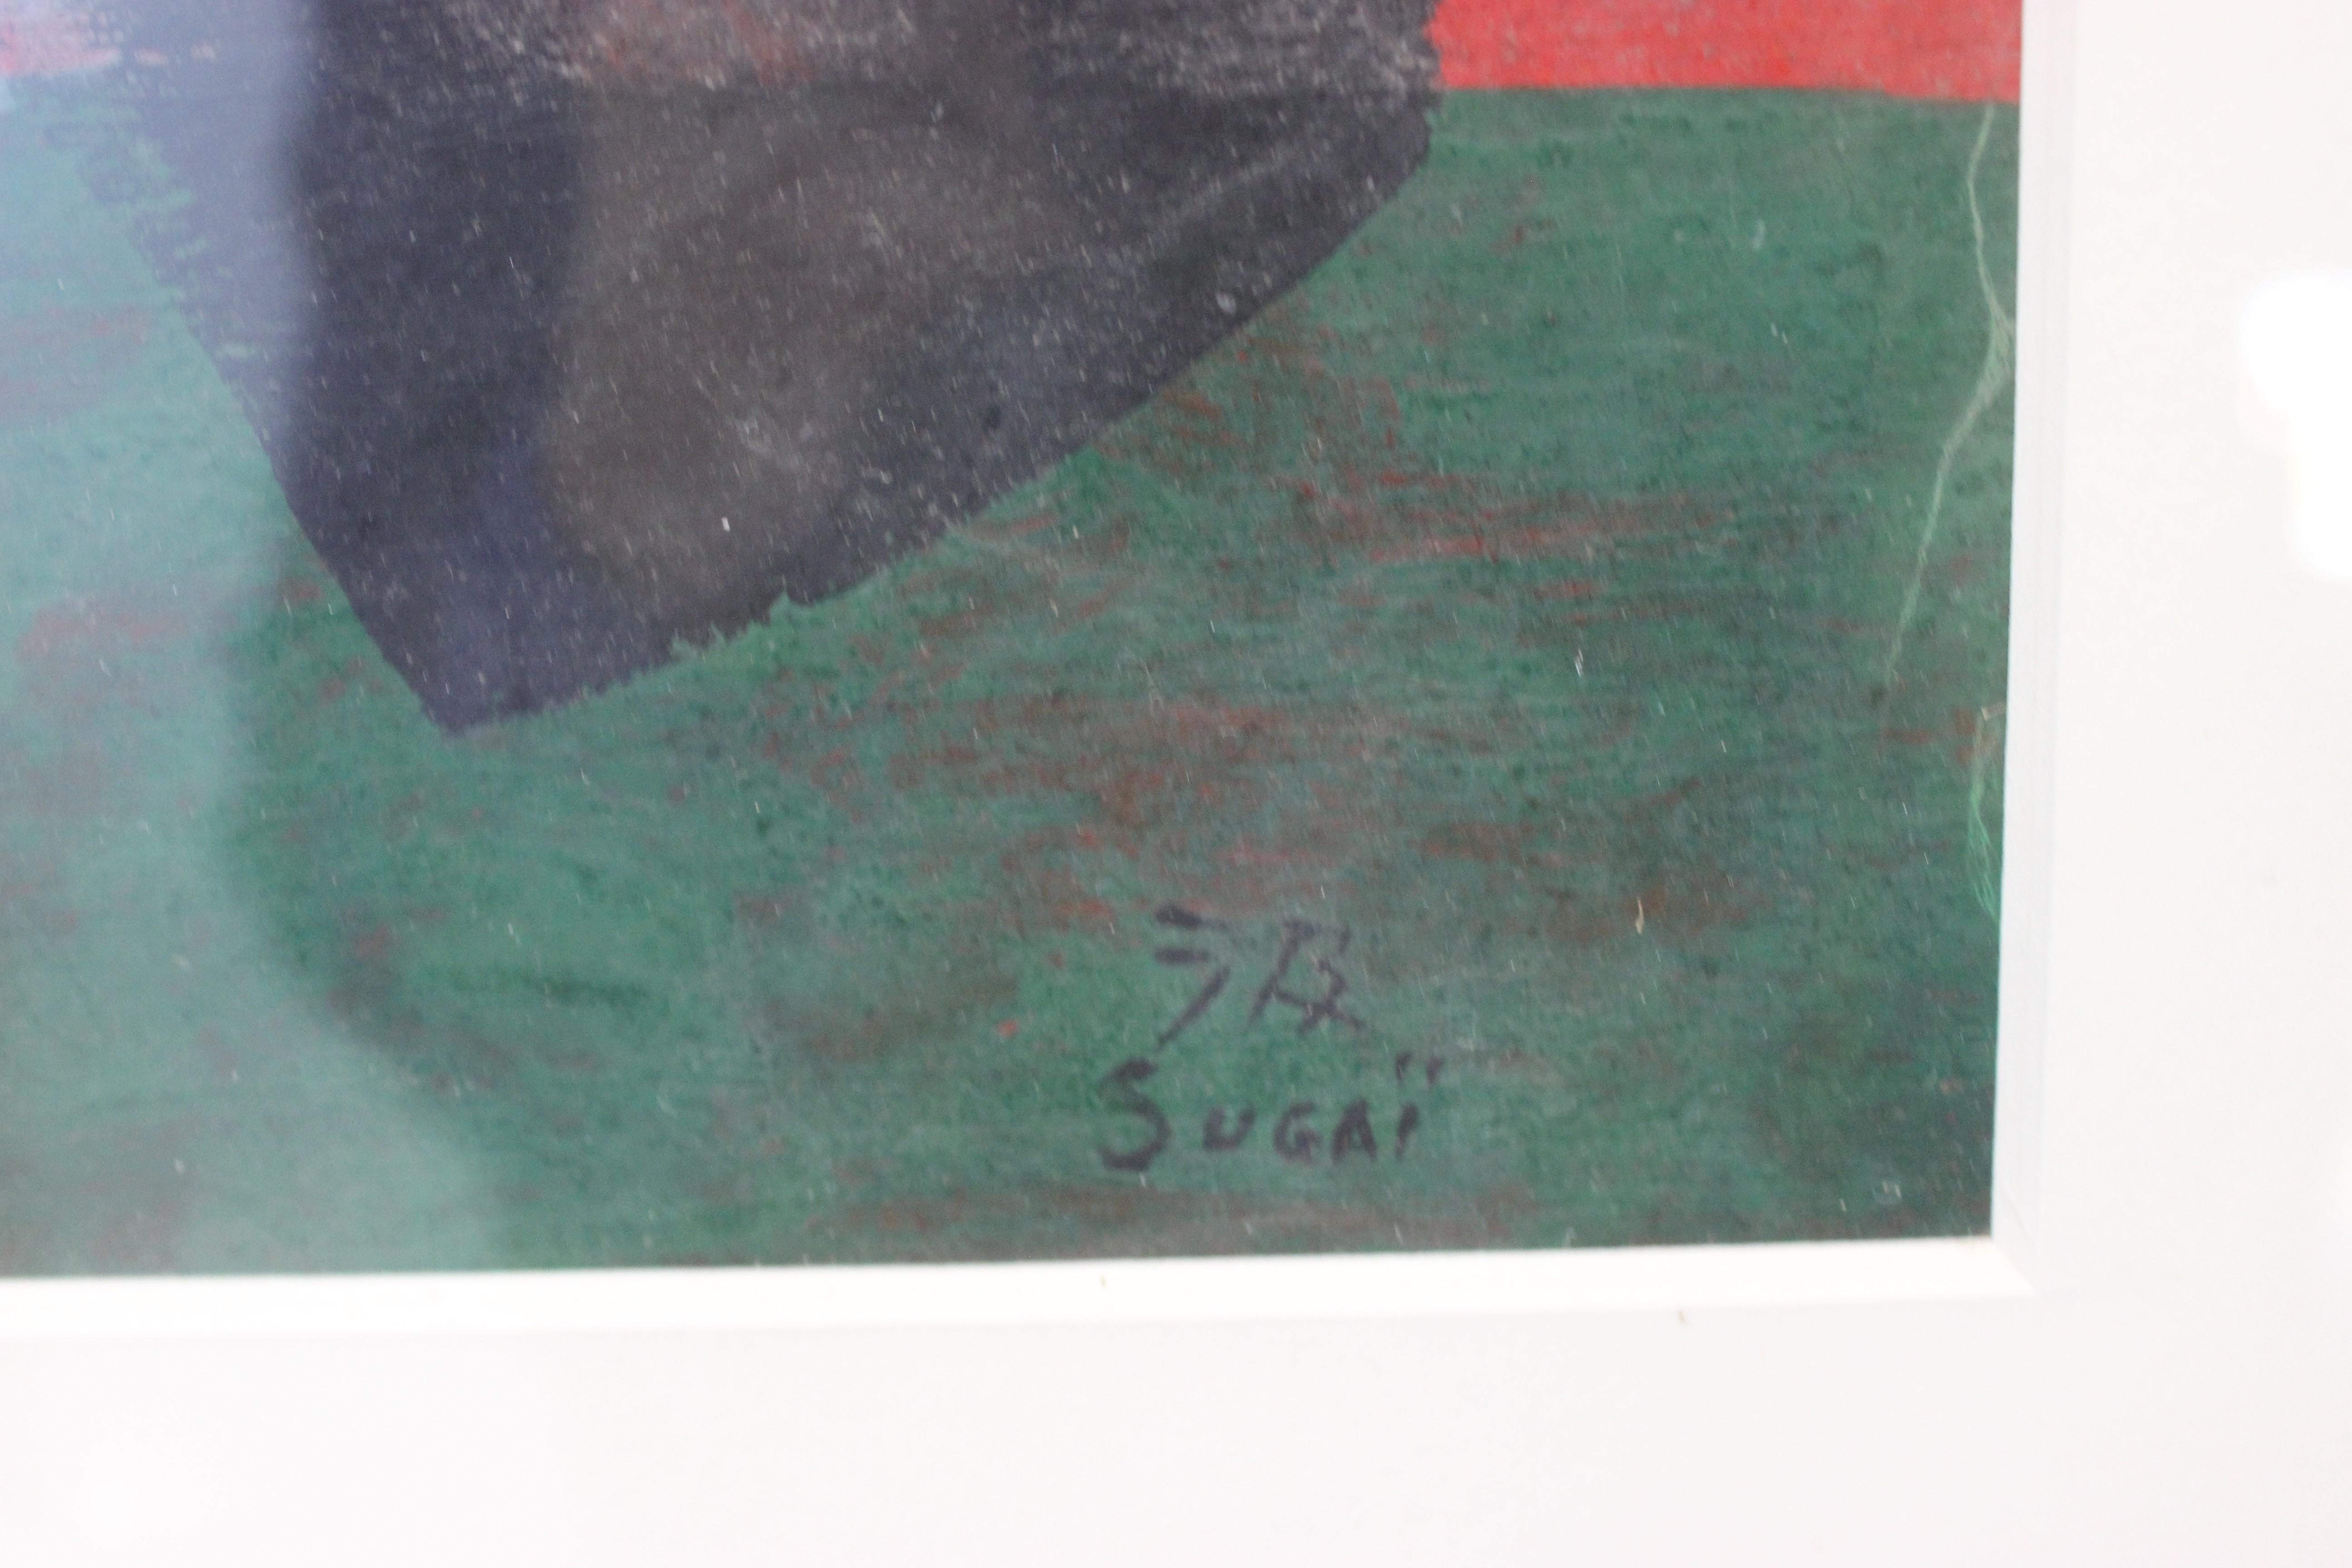 Peinture au pinceau Sugai provenant d'une collection privée de Palm Beach

Après s'être installé à Paris en 1952, Sugaï s'est familiarisé avec l'héritage du surréalisme et de l'impressionnisme abstrait, et a commencé à adapter les formes et les